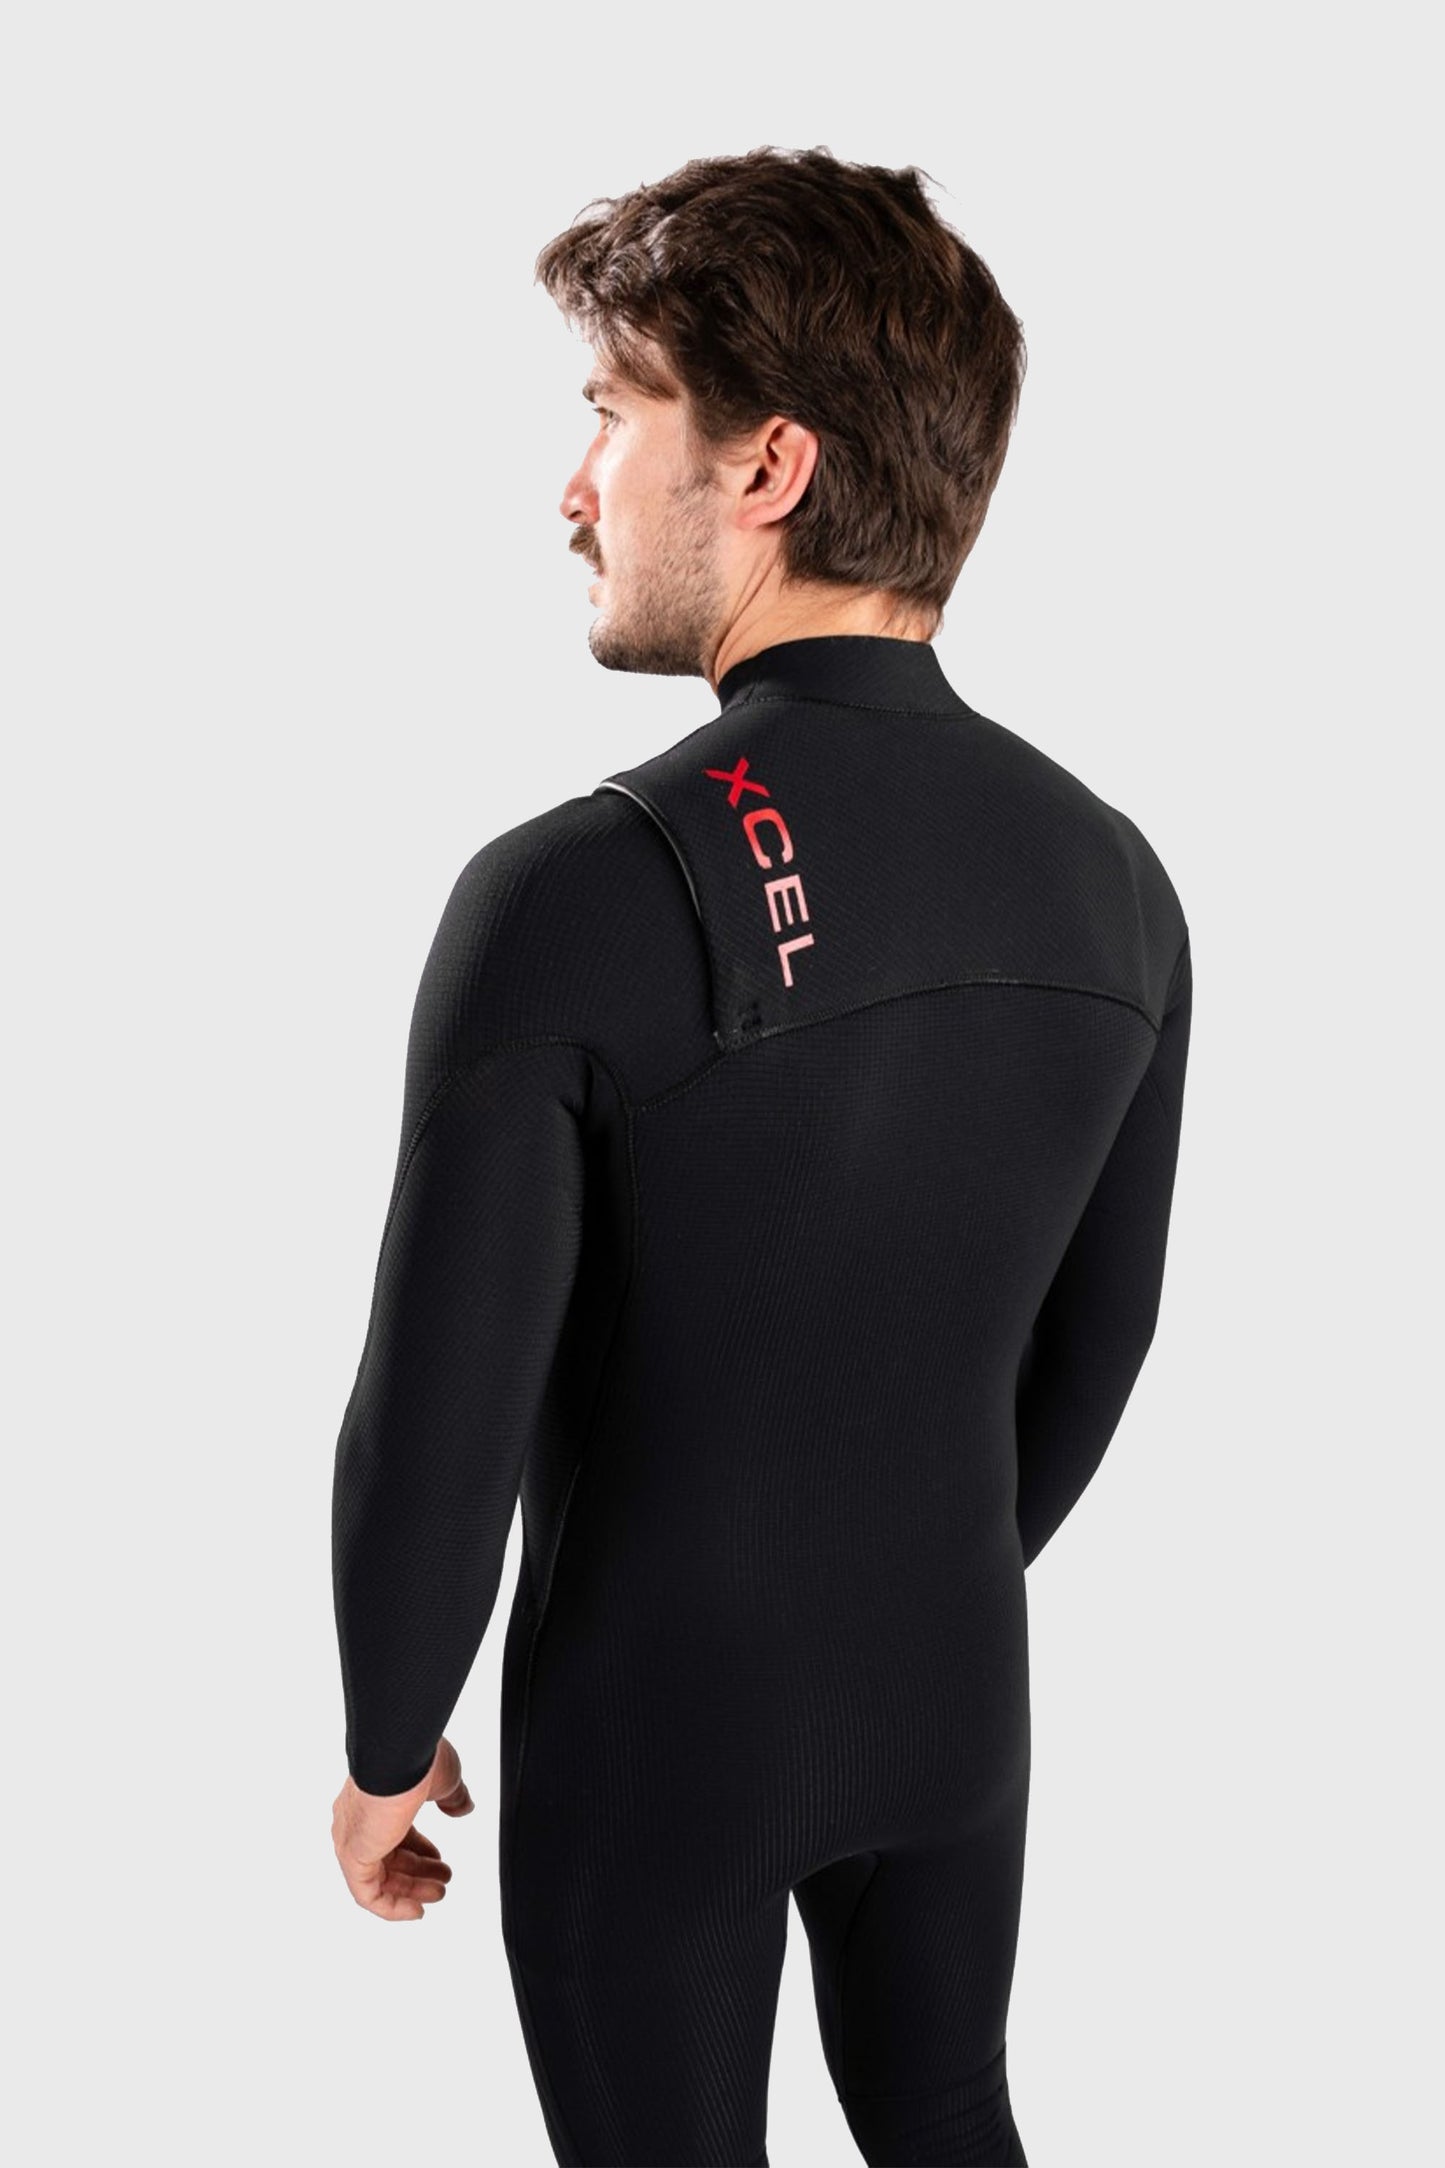 
                  
                    Pukas-Surf-Shop-Xcel-Wetsuit-Infiniti-X2-Ltd-edition-4_3-Fullsuit
                  
                